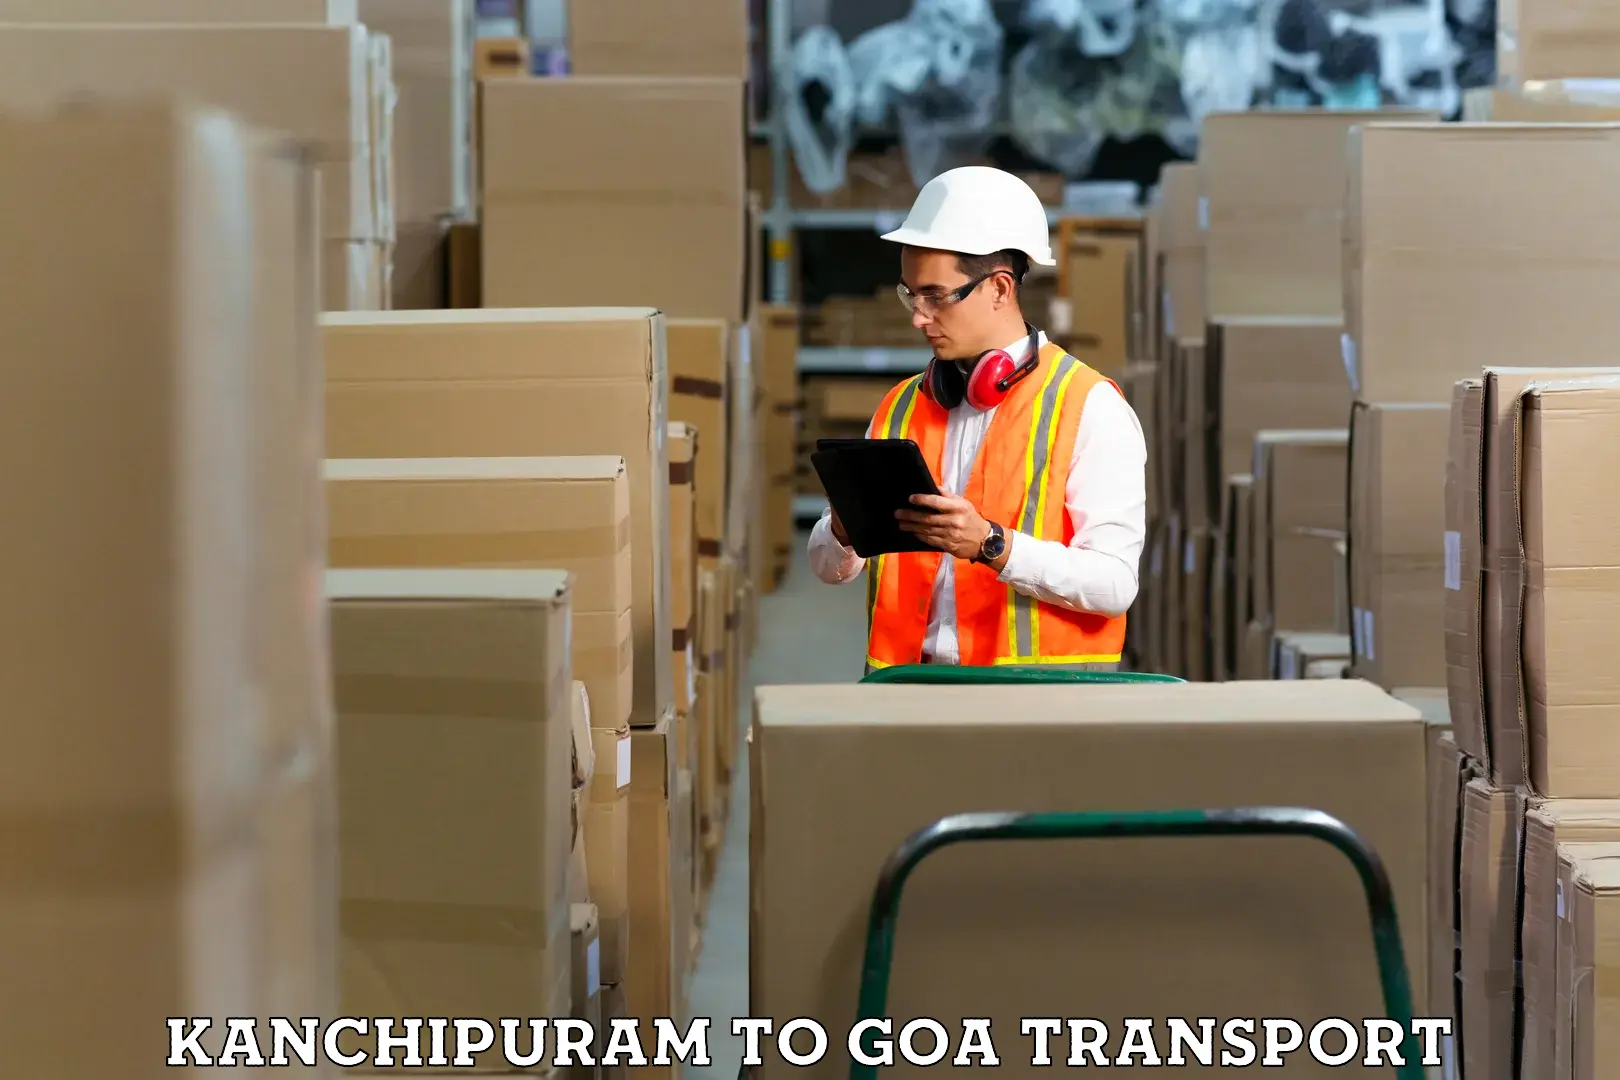 Air freight transport services Kanchipuram to IIT Goa